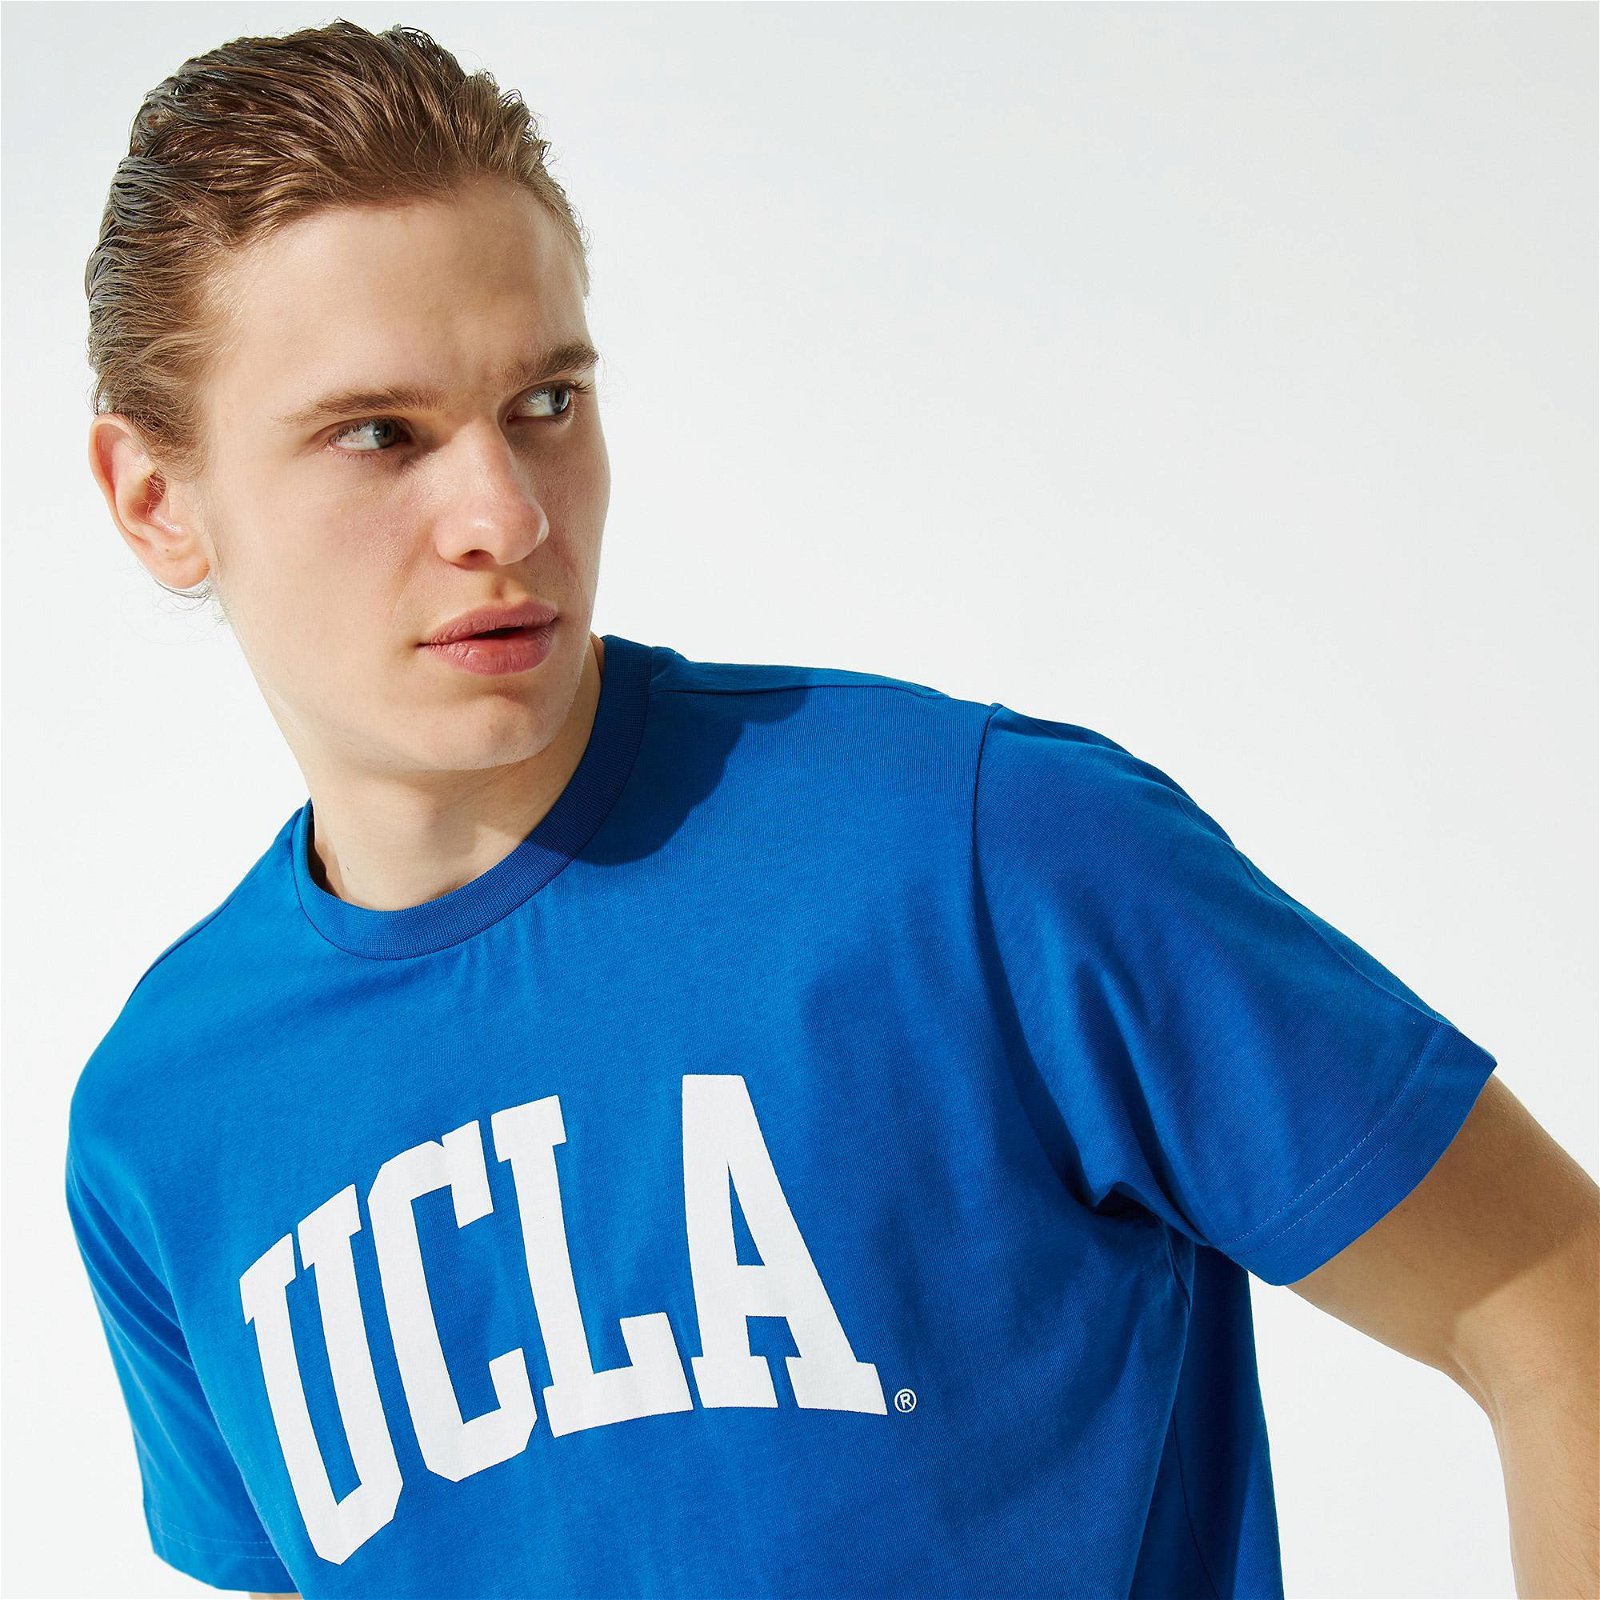 UCLA Culver Erkek Mavi T-Shirt